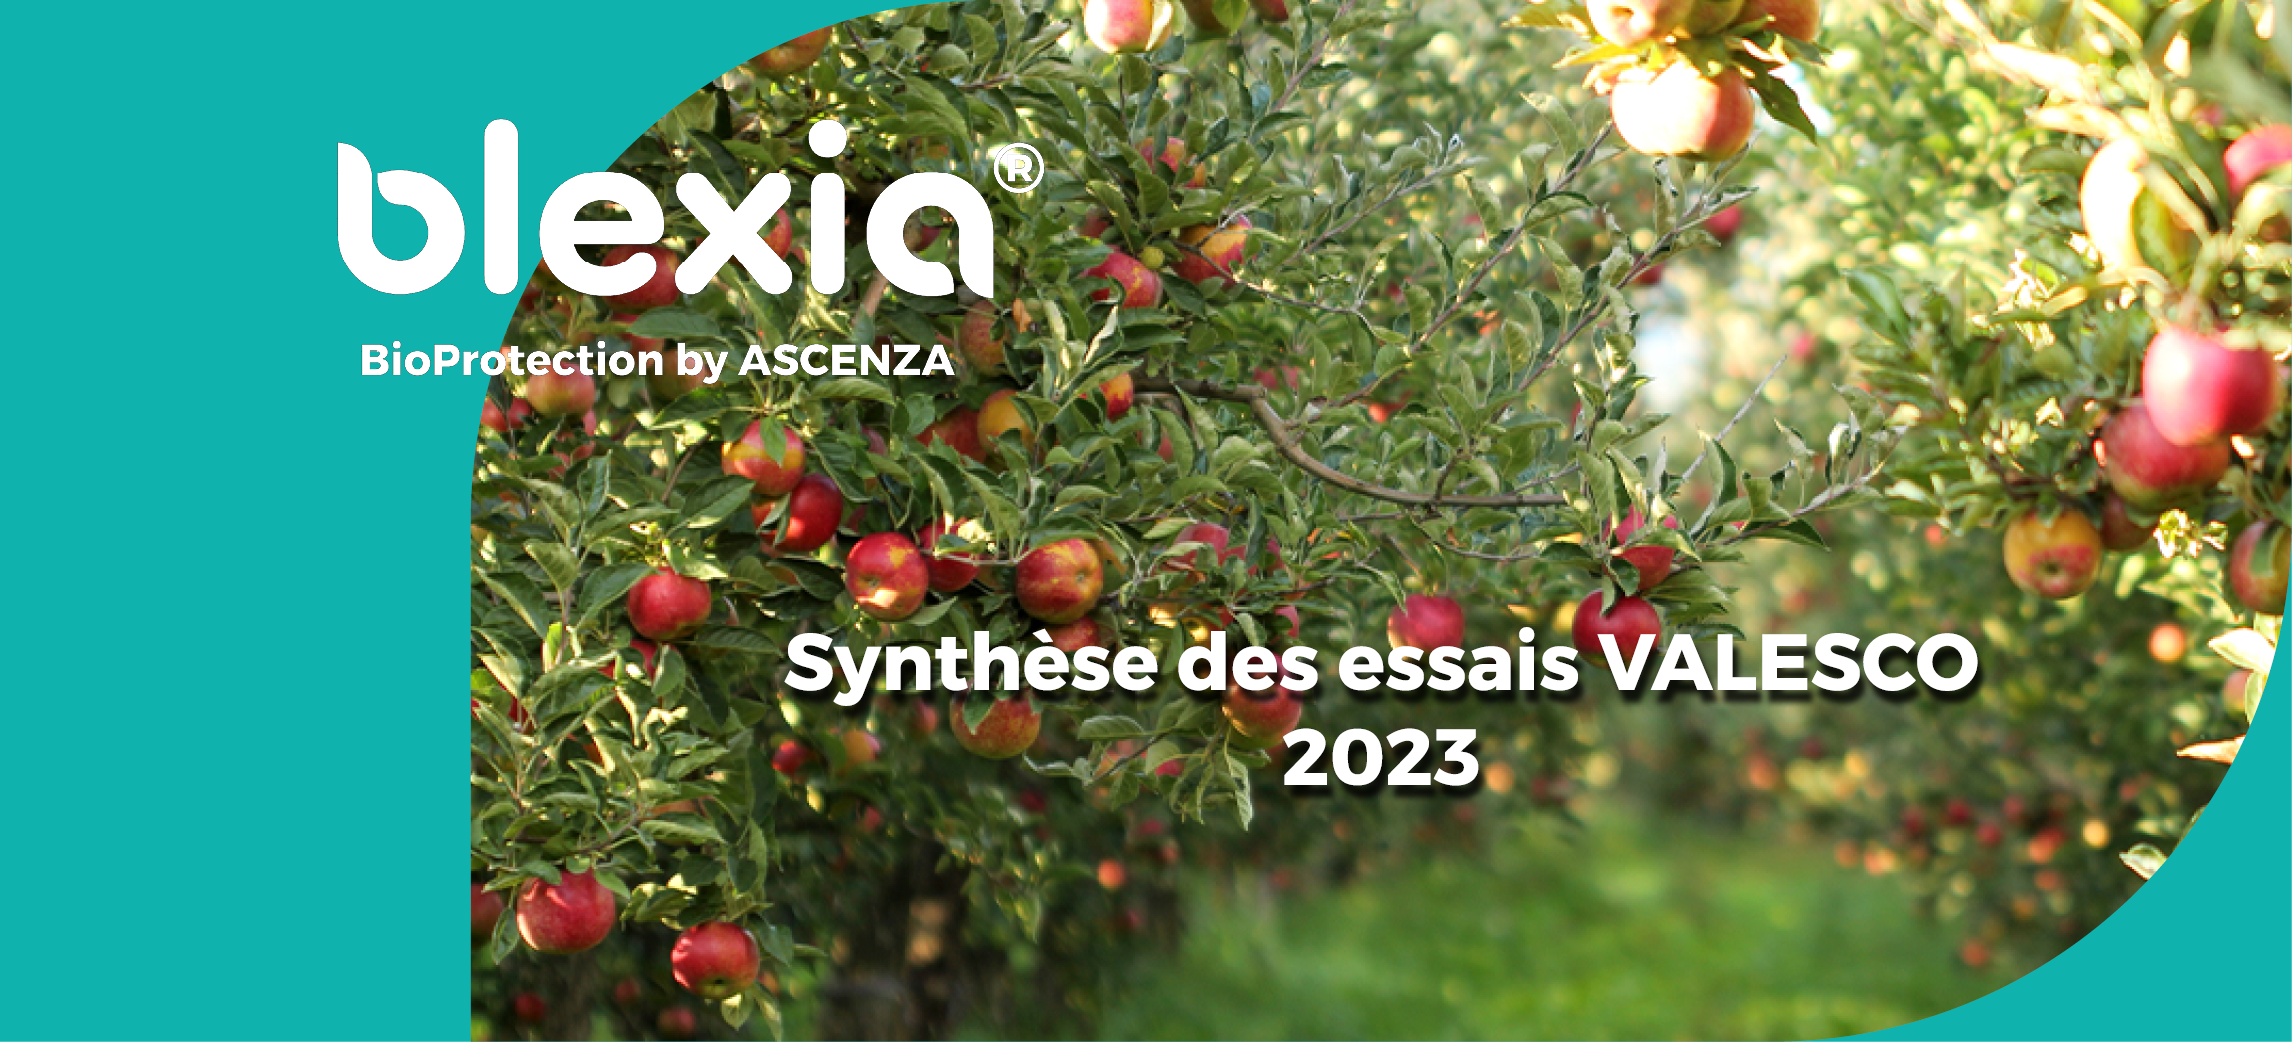 Une photo de verger avec le logo Blexia et le texte synthèse des essais VALESCO 2023